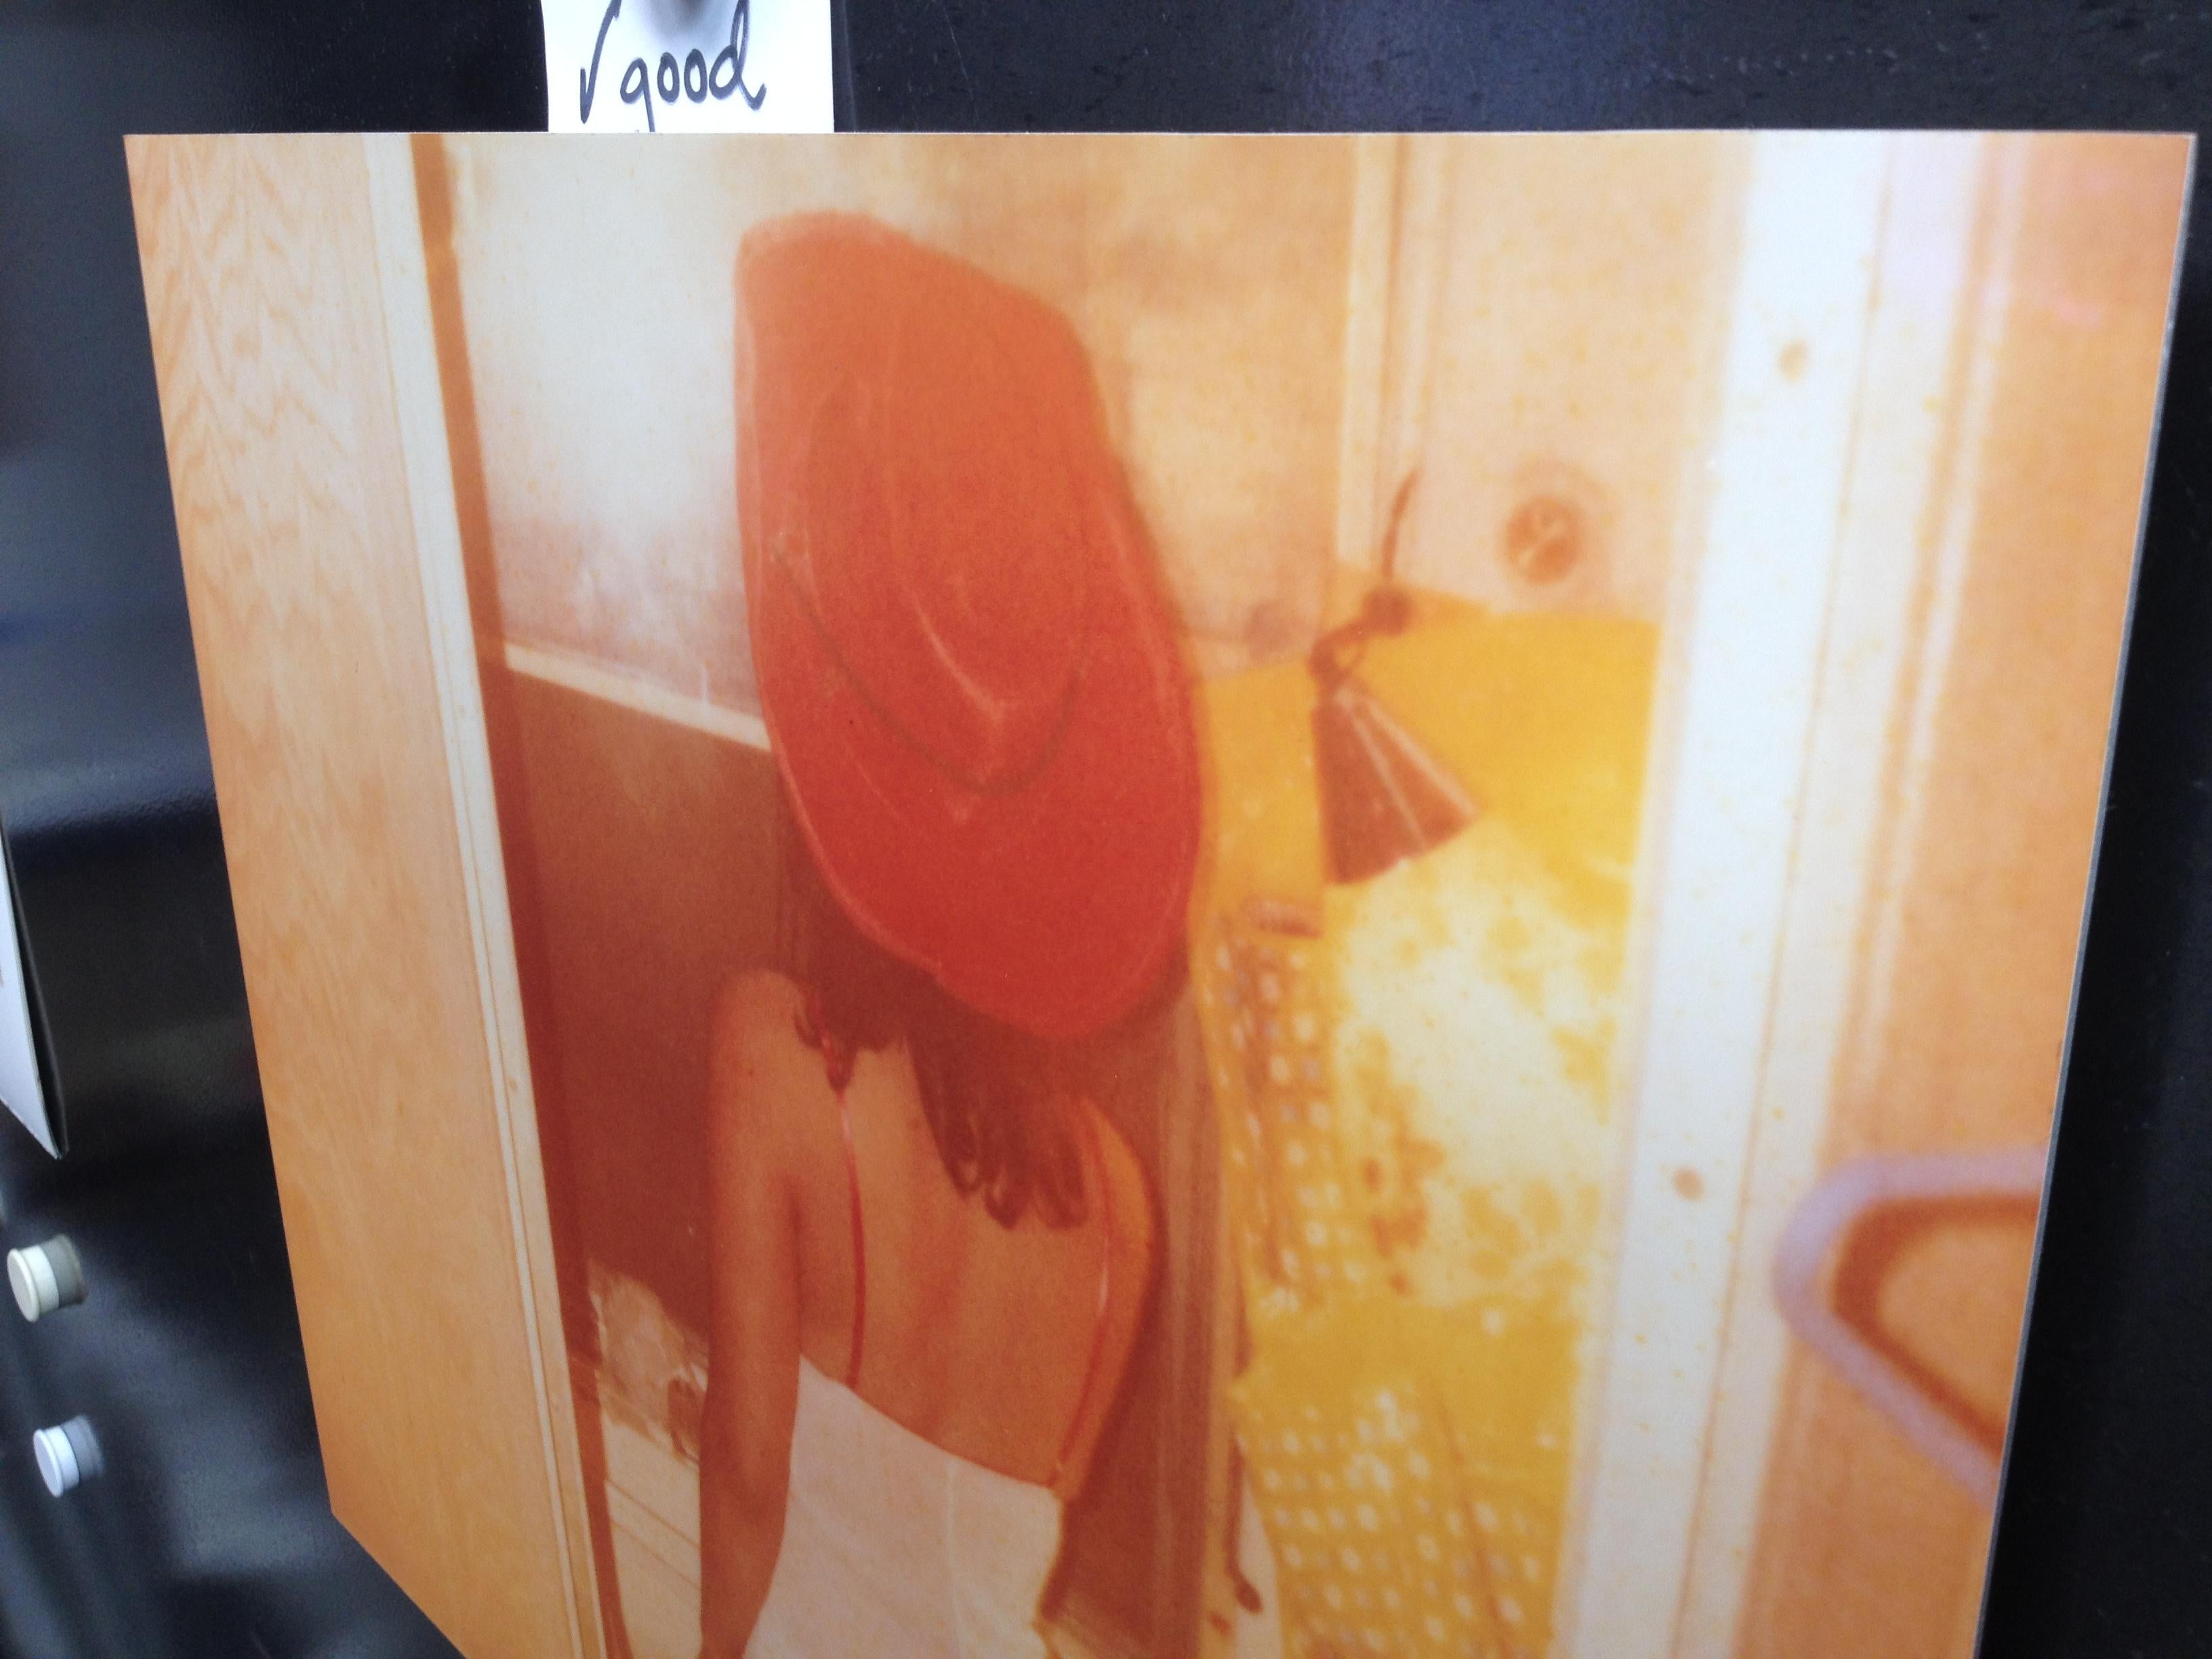 Margarita raucht im Badezimmer 
(Bis dass der Tod uns scheidet), 
2007, 40x50cm, Auflage 1/5,
analoger C-Print, gedruckt von der Künstlerin, 
aufgezogen auf Aluminium mit mattem UV-Schutz, basierend auf einem Original-Polaroid, 
Zertifikat und